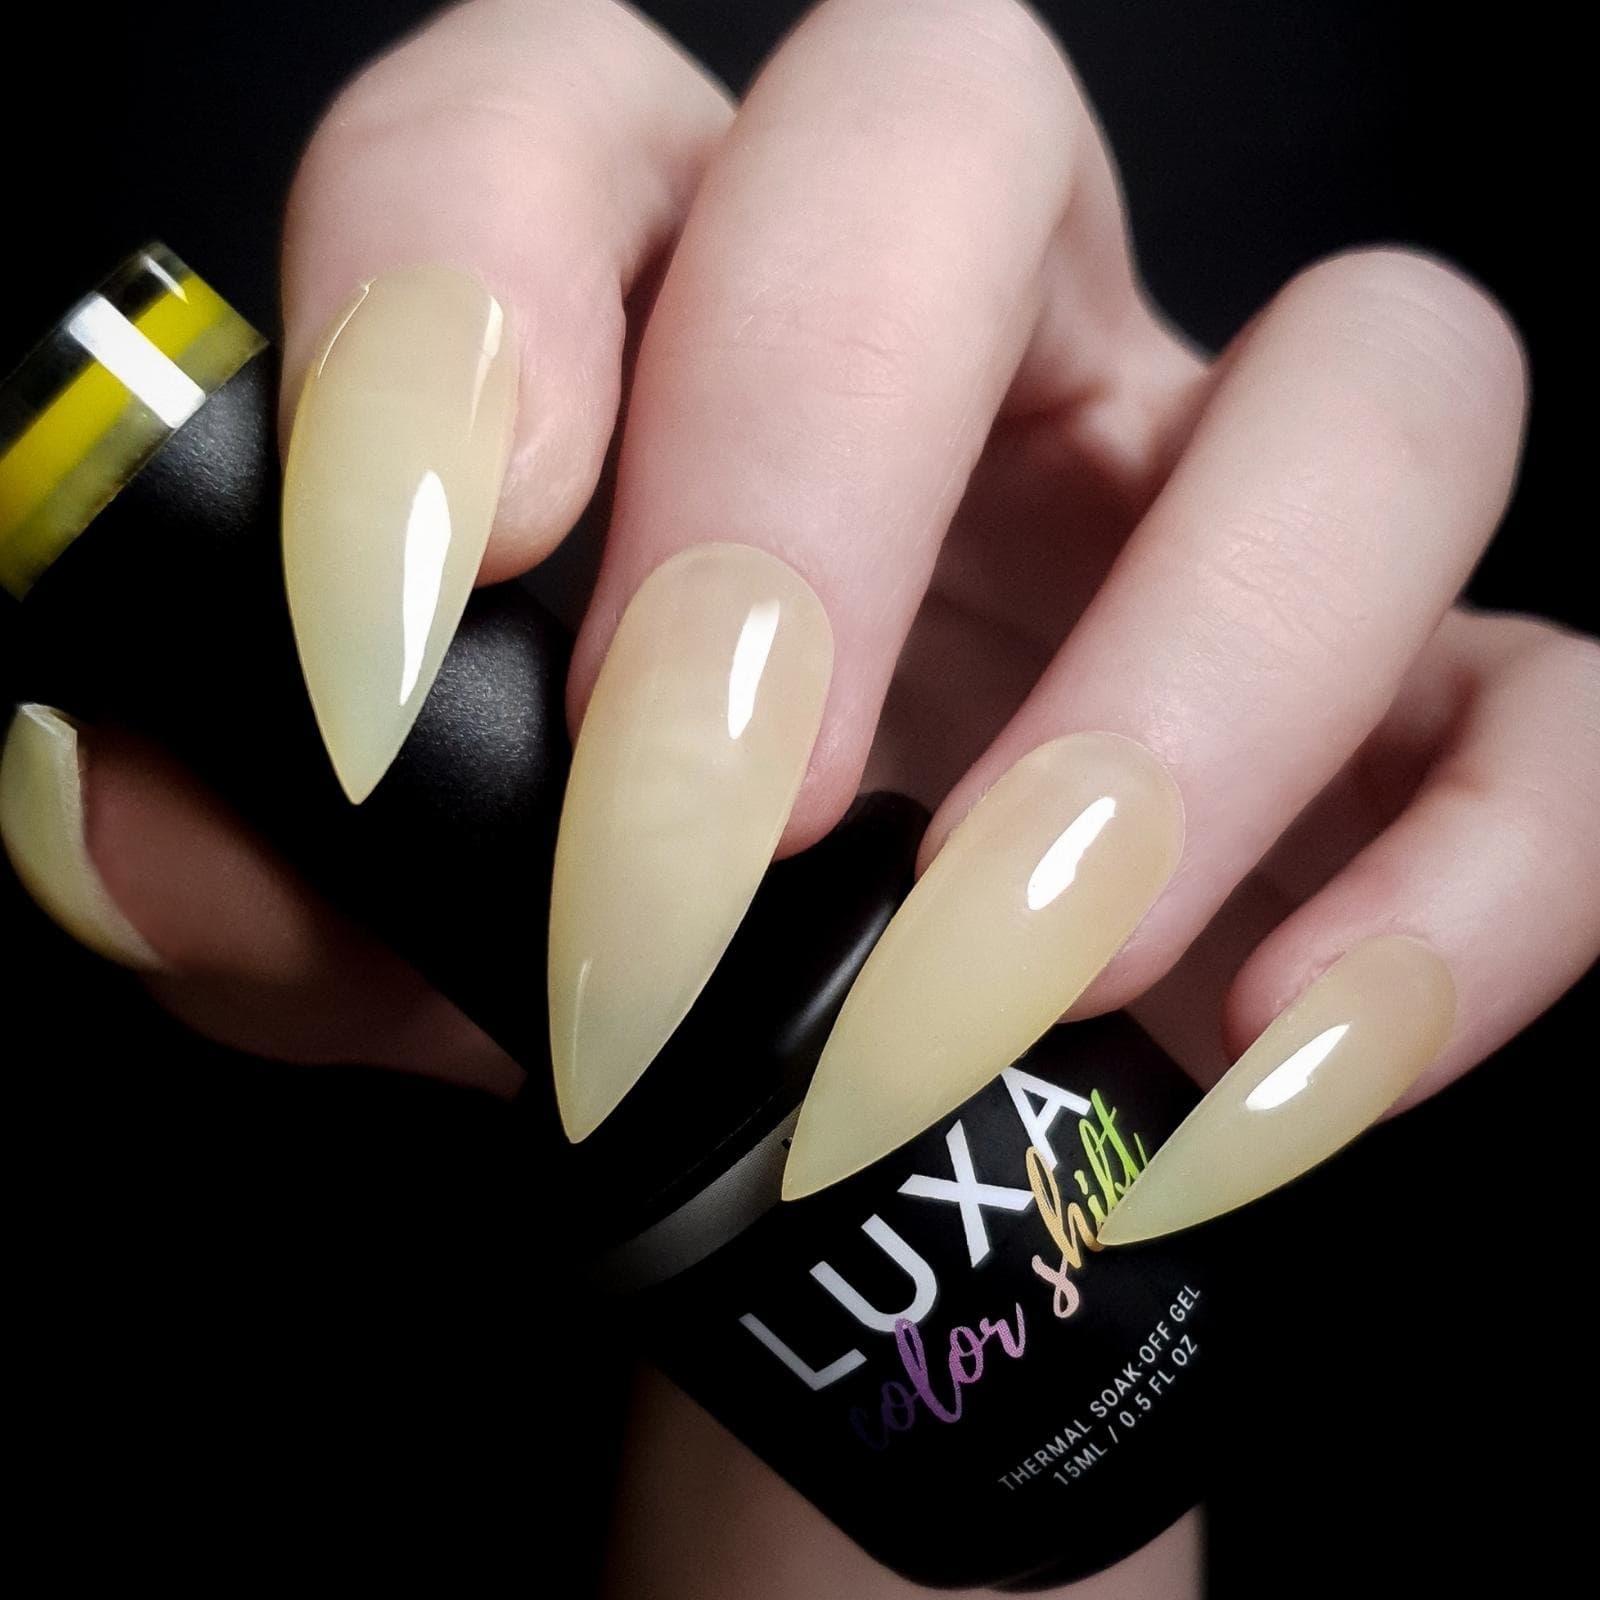 Luxapolish Lemon Creme